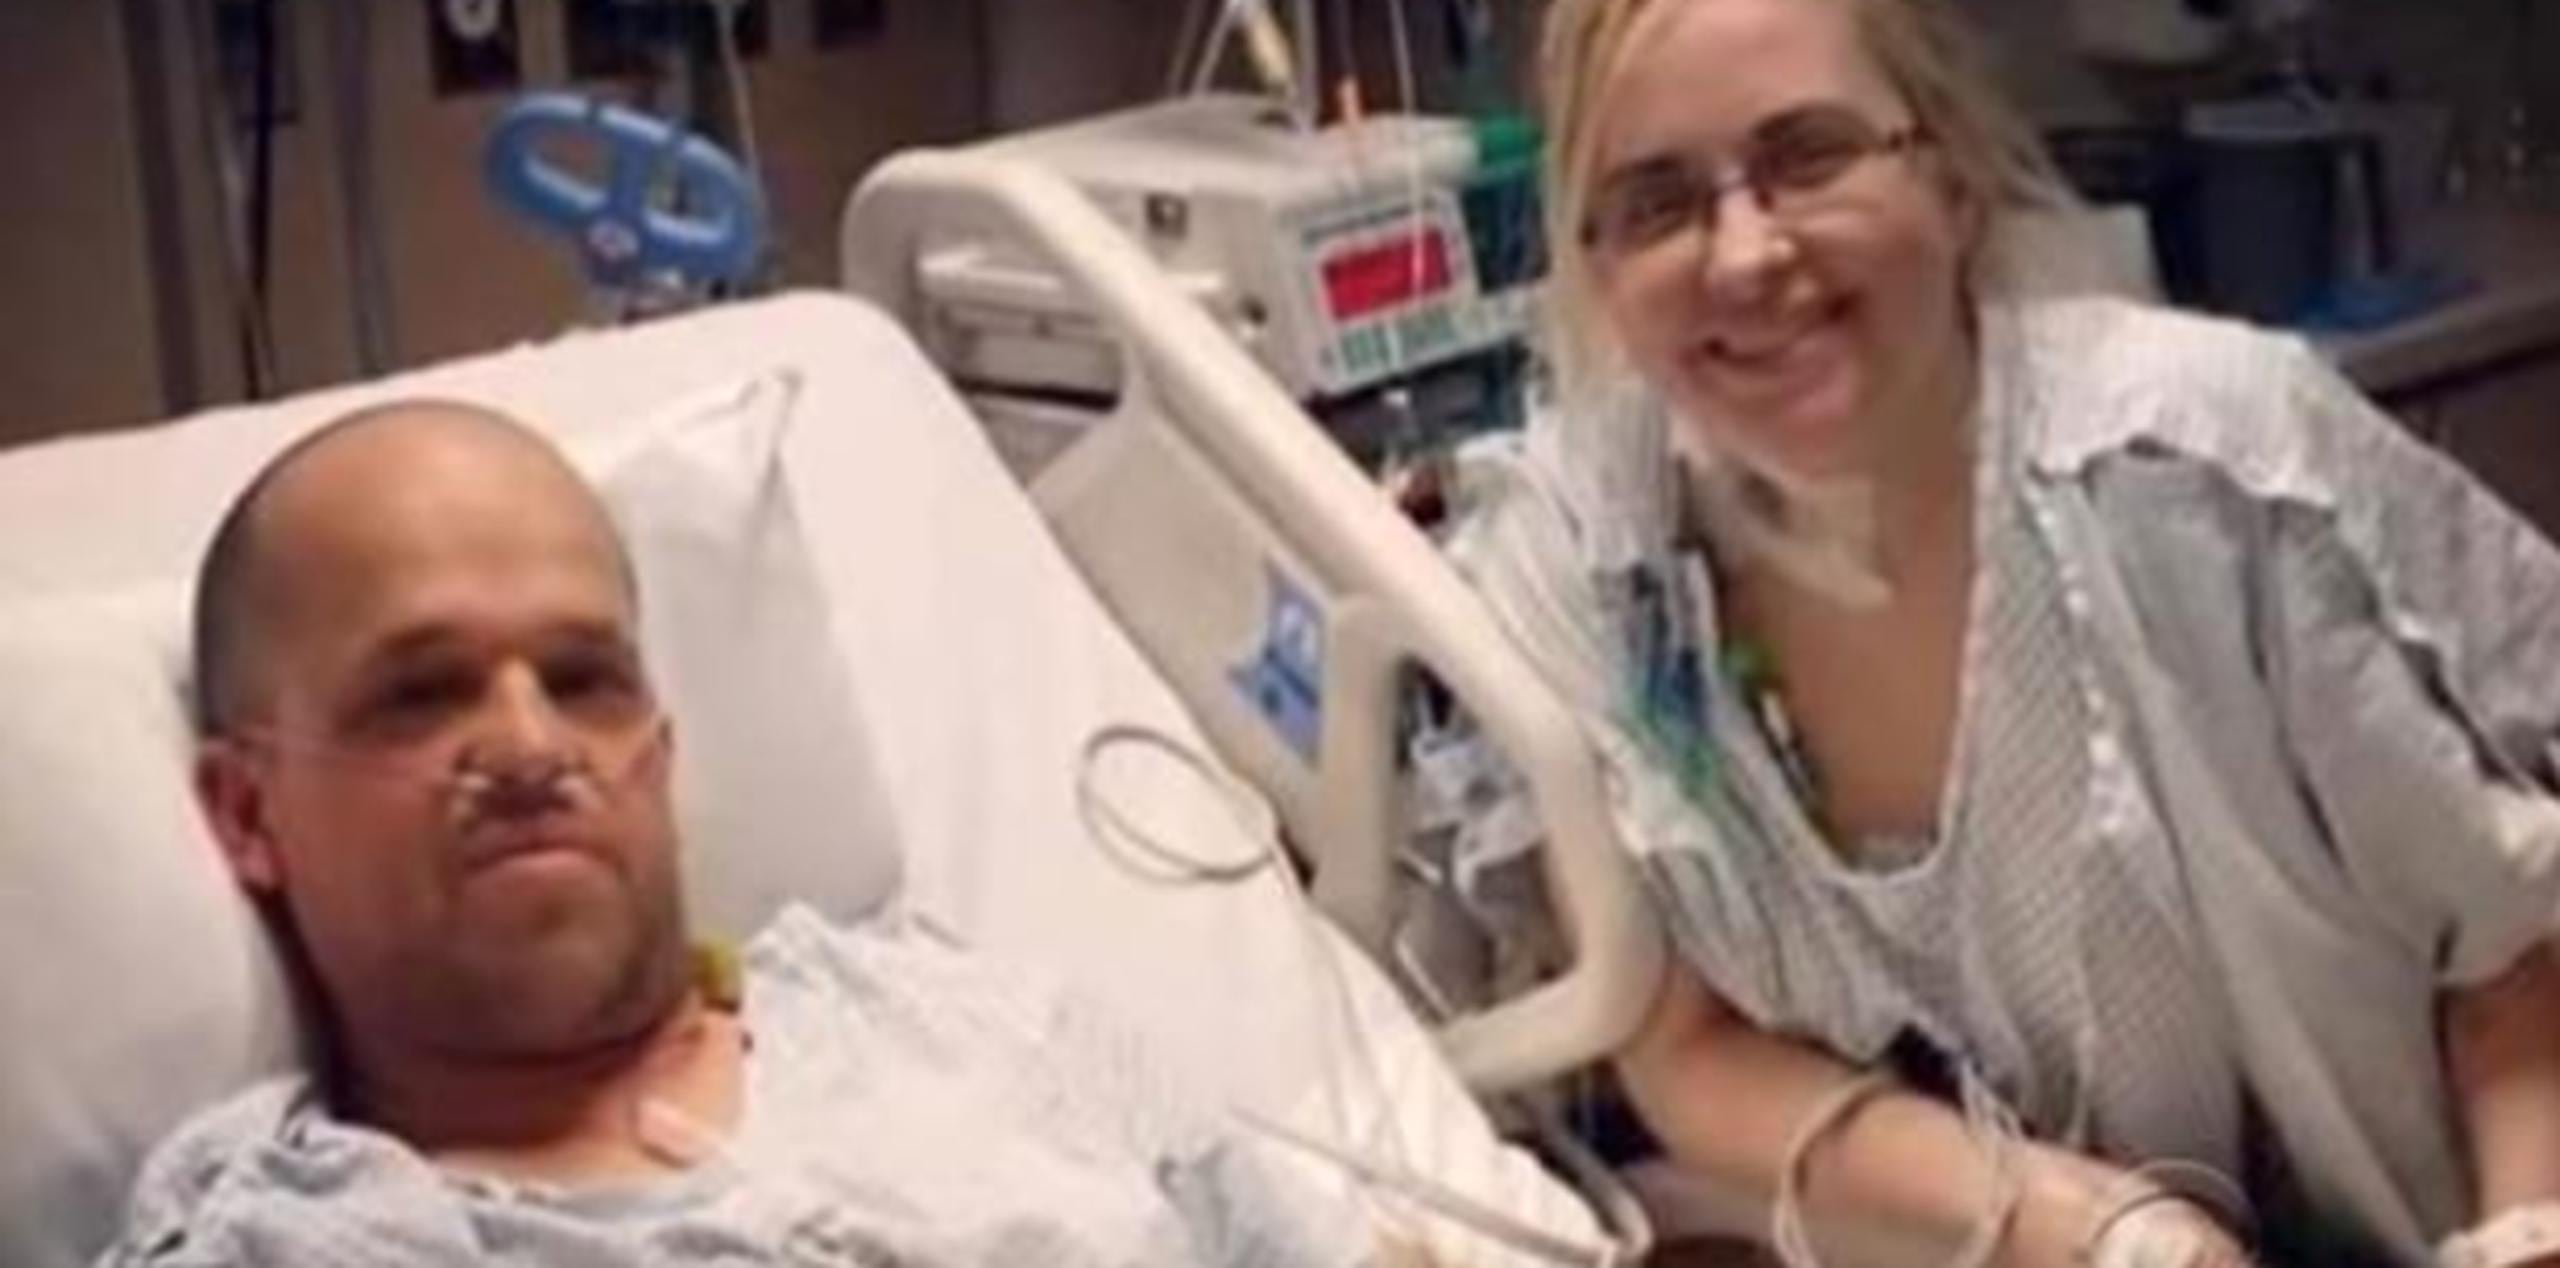 Pocos días antes de su cumpleaños número 26, Heather ingresó al hospital para finalmente recibir el transplante, con Chris en la habitación contigüa. (emedemujer.com)